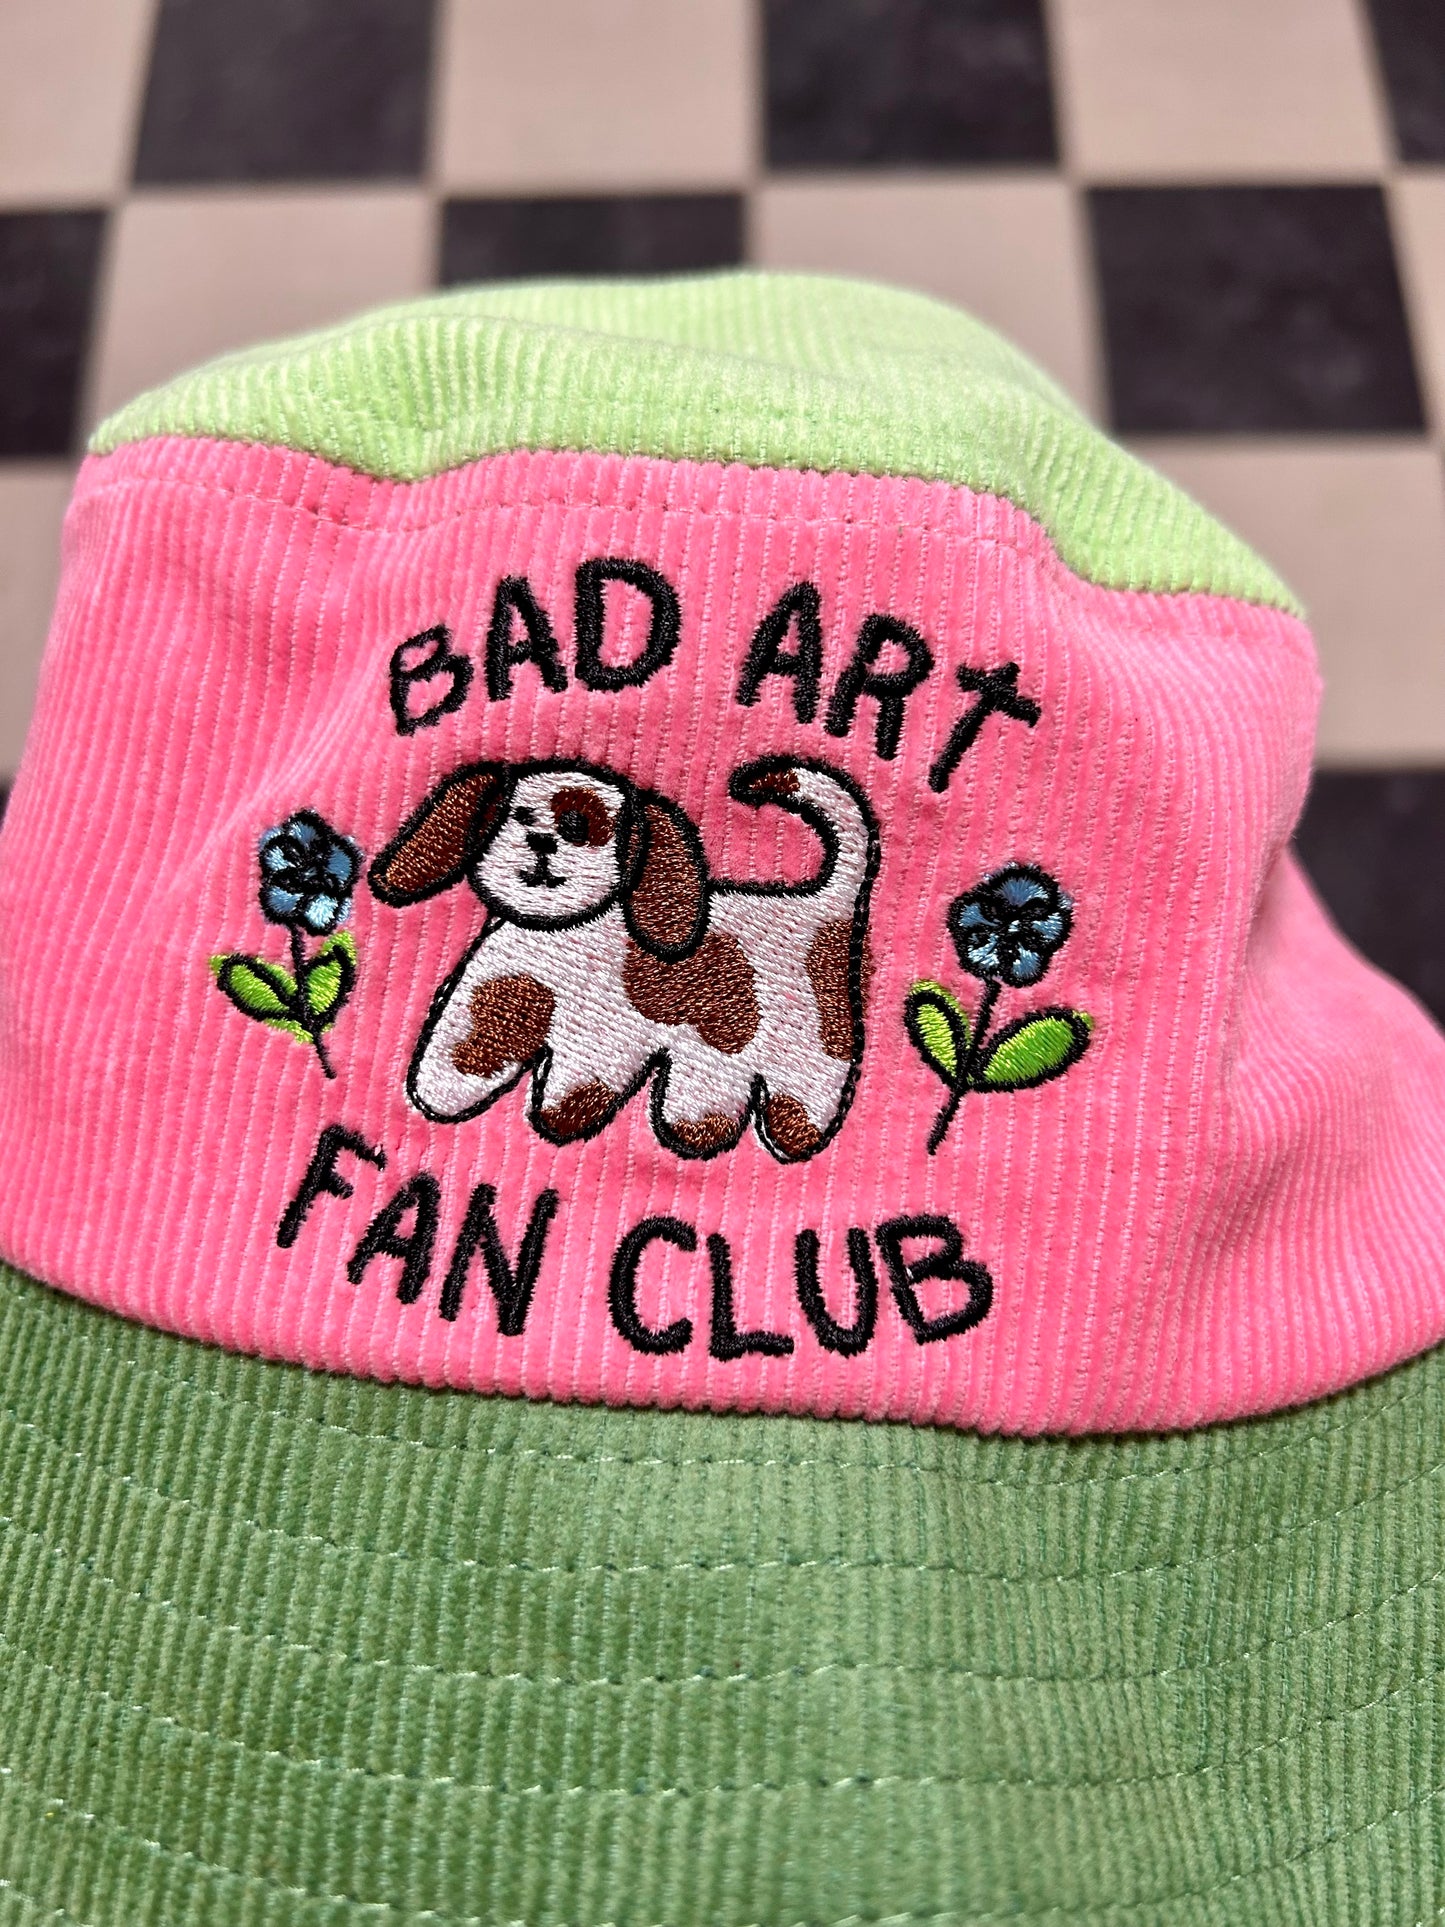 Bad Art Fan Club Color Block Bucket Hat